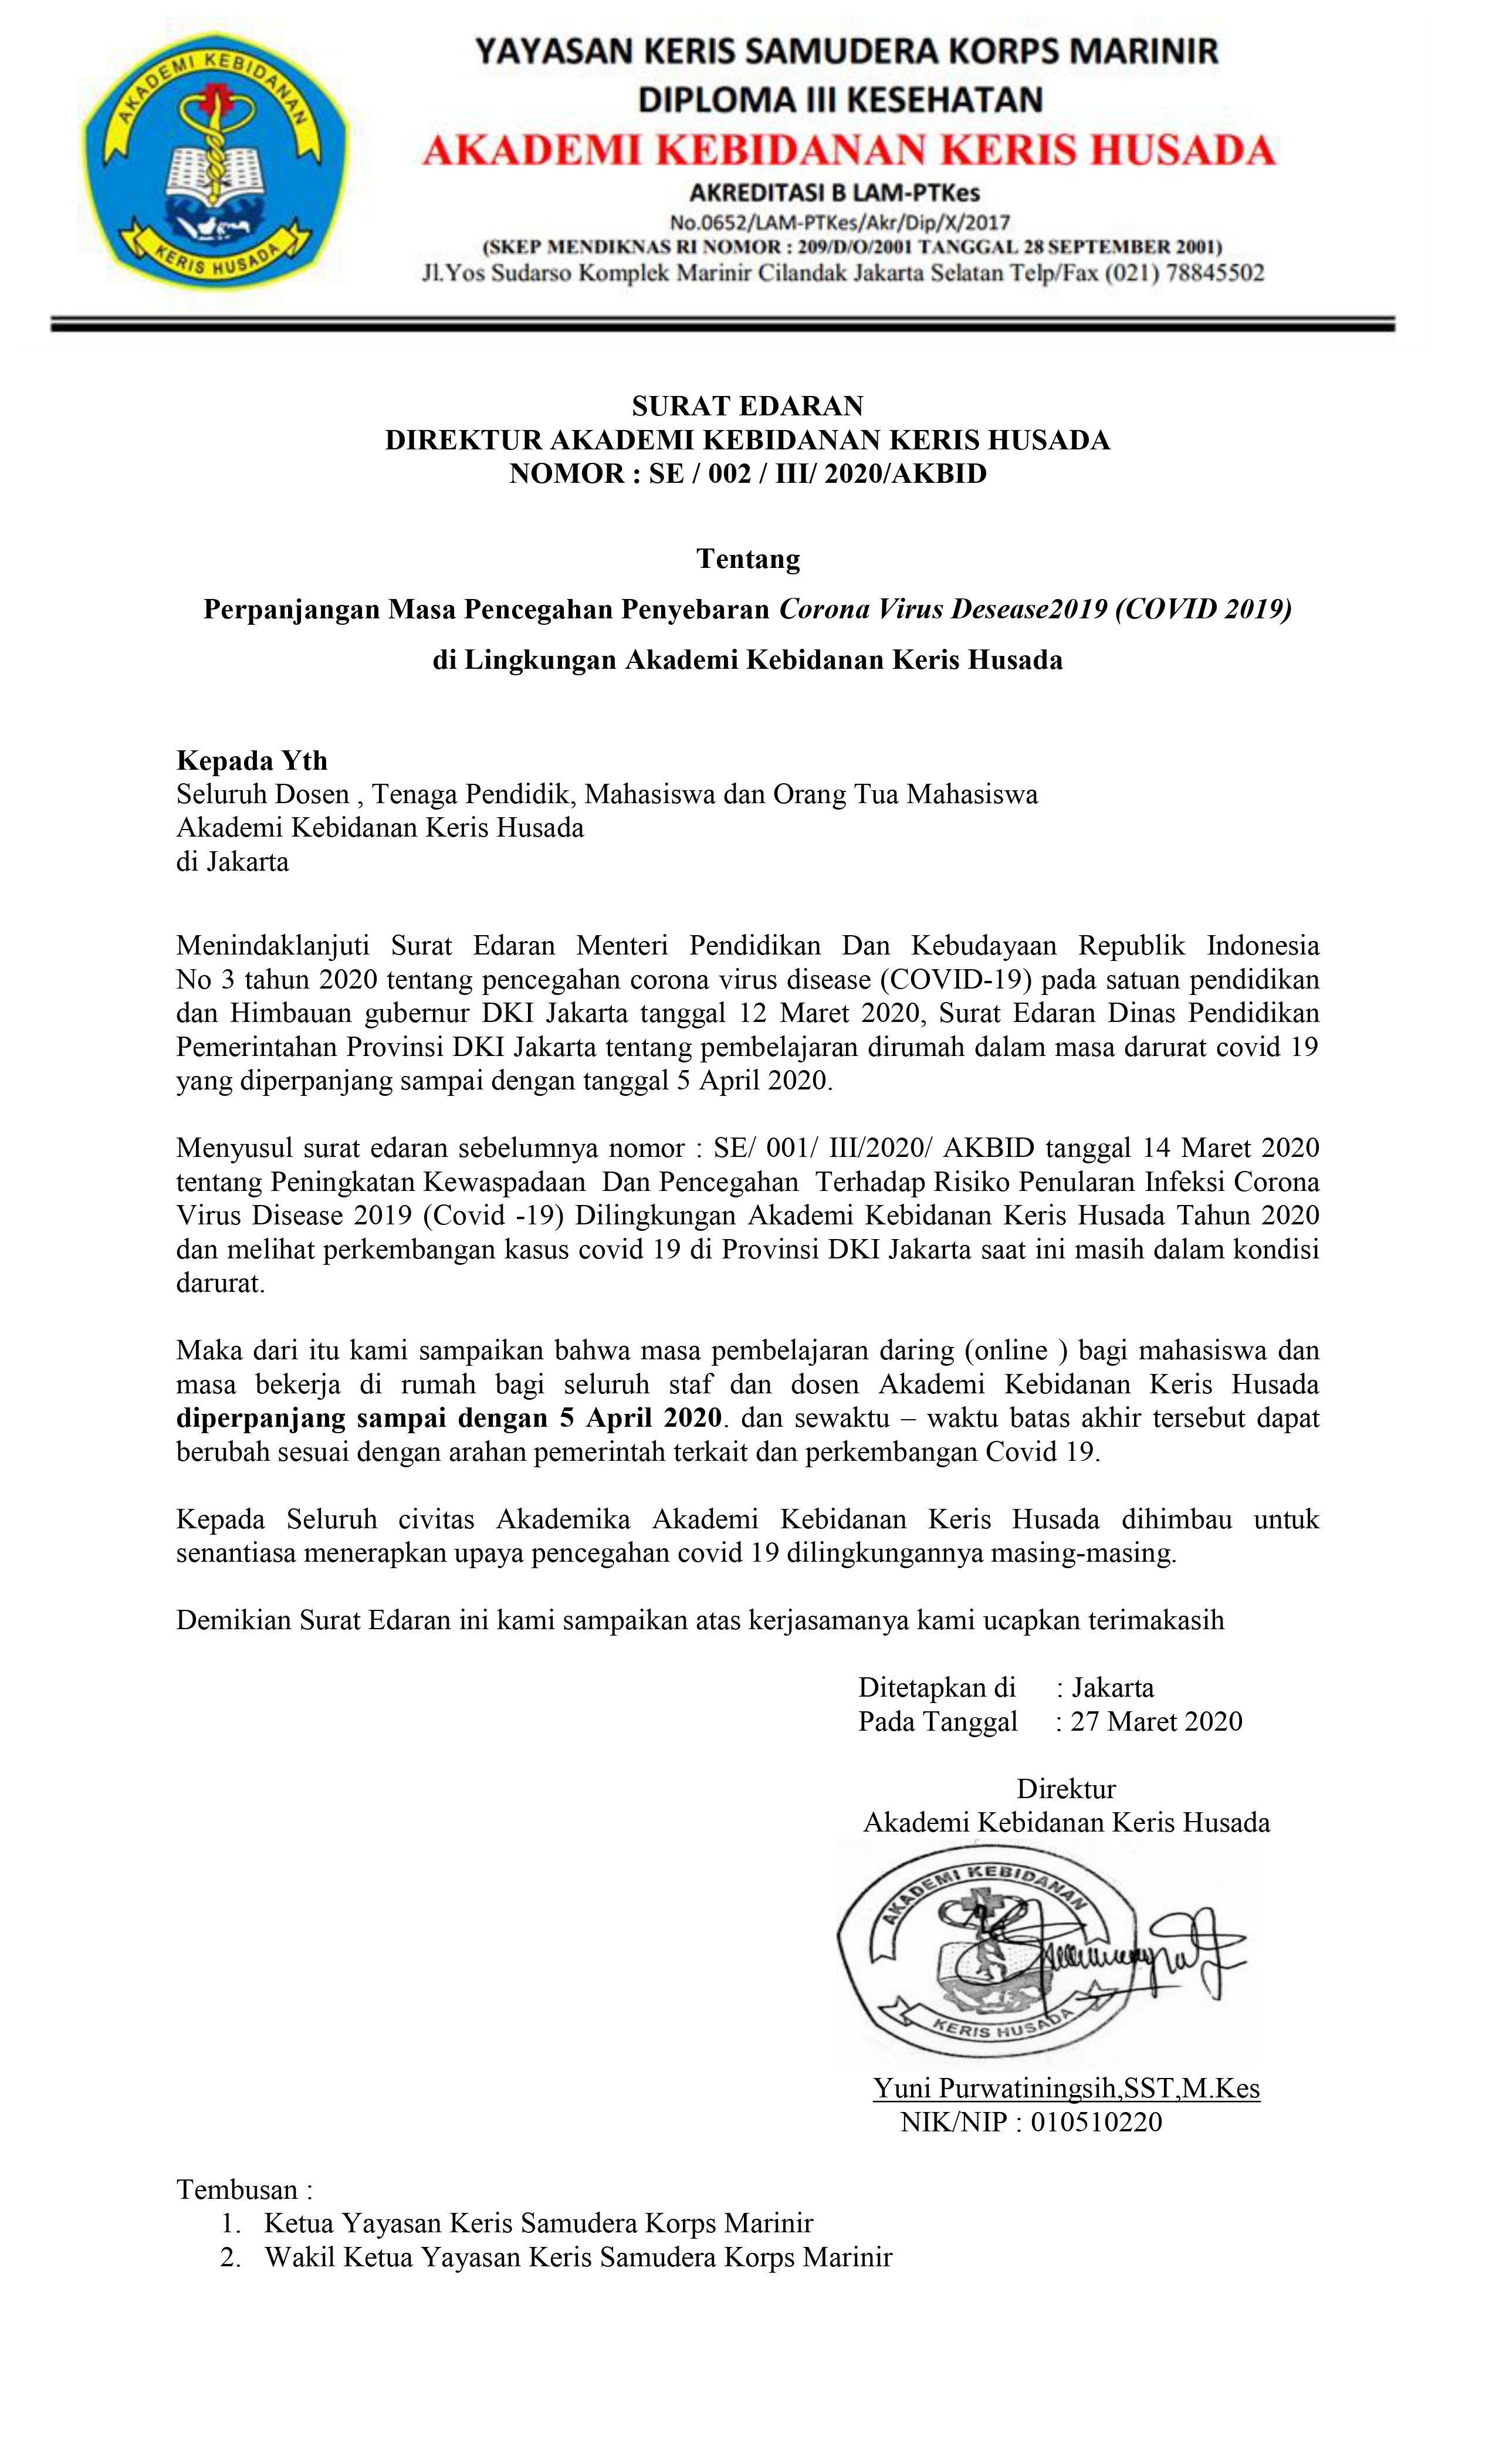 Surat Edaran perpanjangan masa pencegahan virus covid-19 di lingkungan Akbid Keris Husada